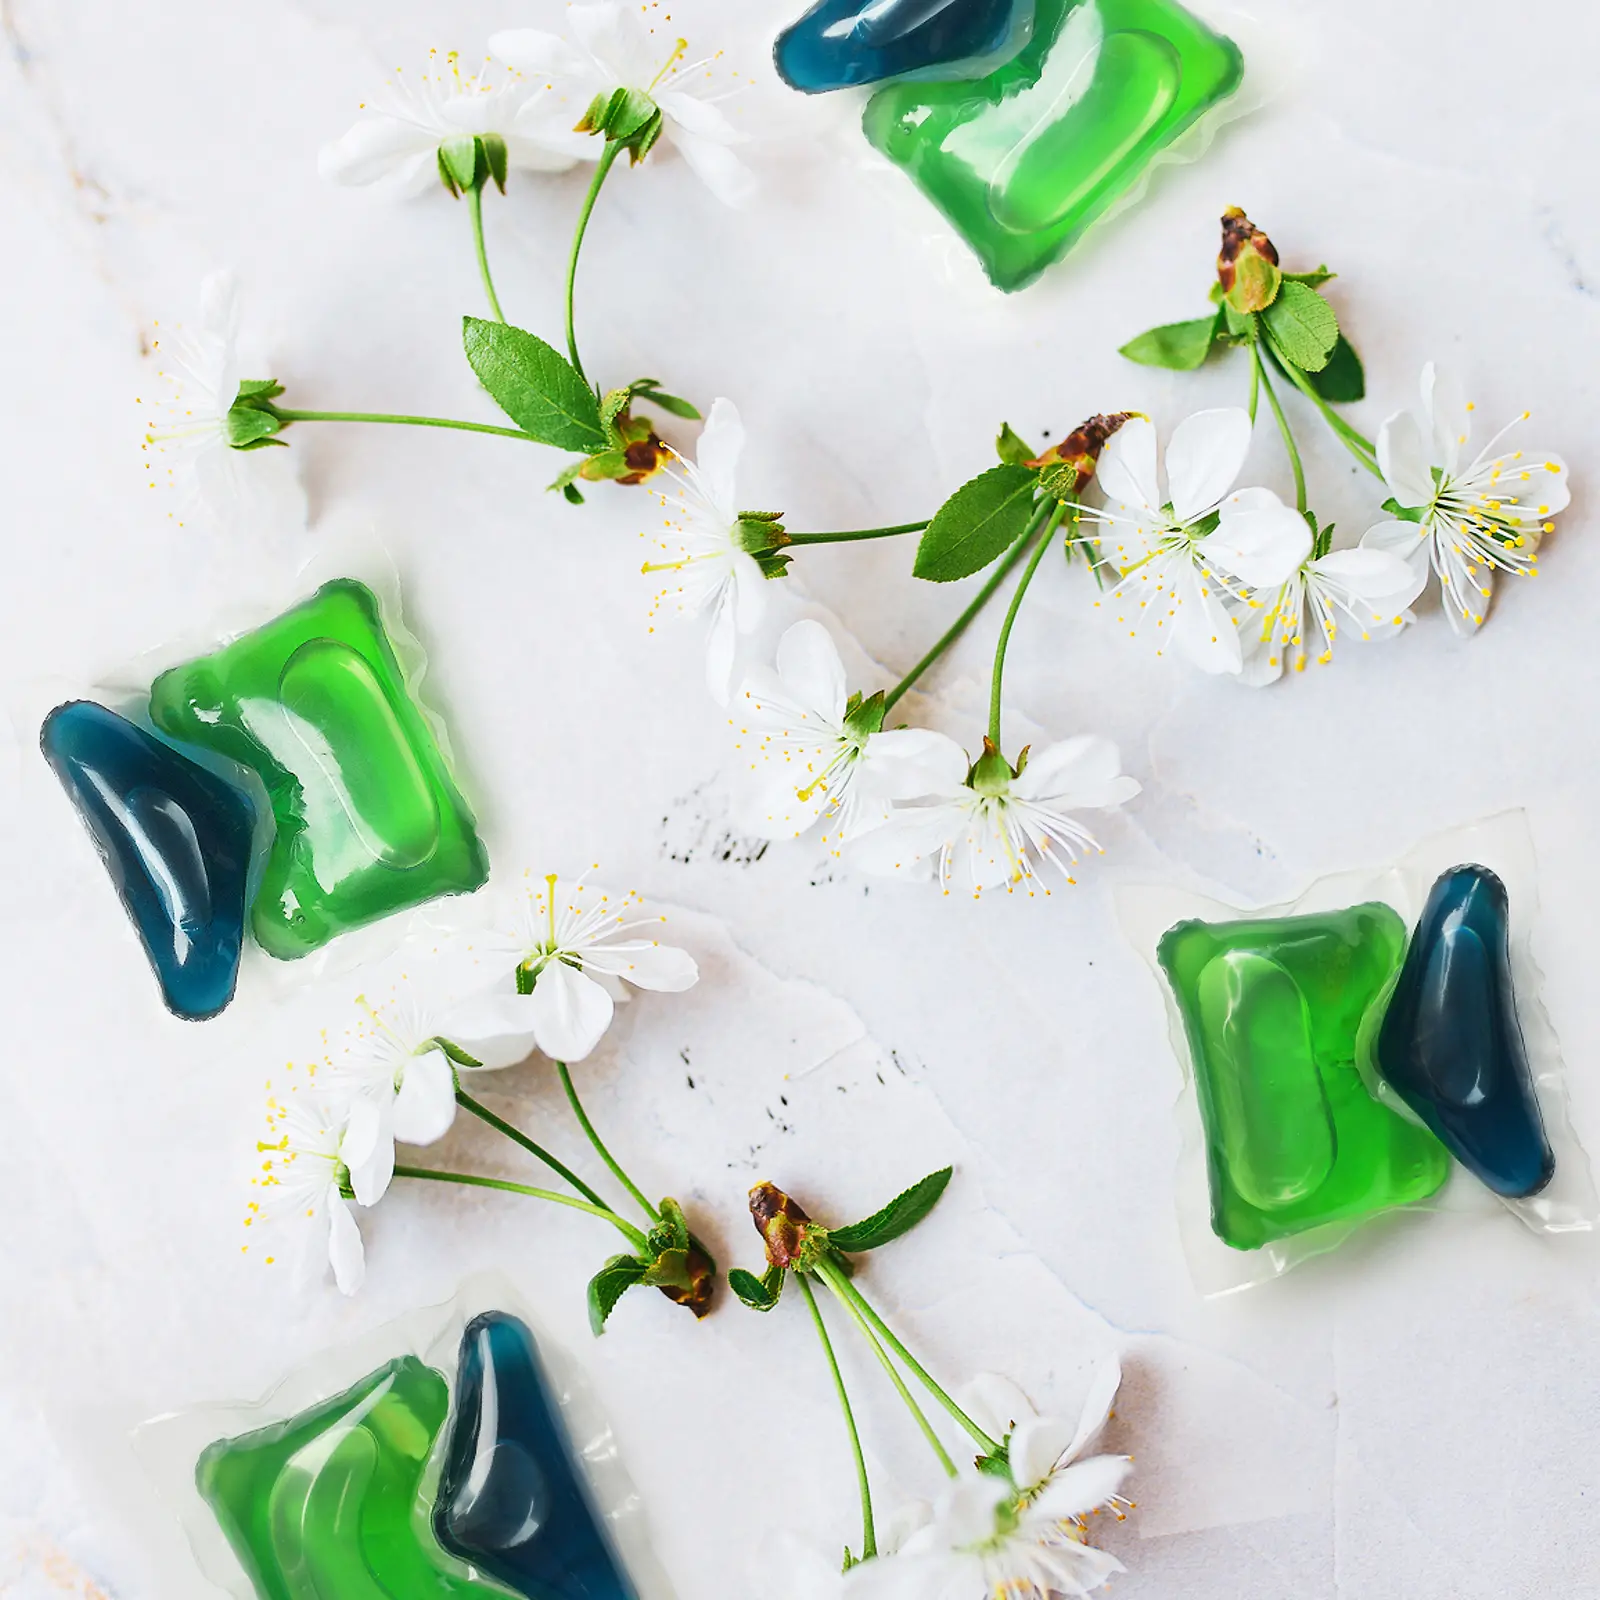 Dos fichas verdes y azules Henkel Persil con flores de cerezo alrededor